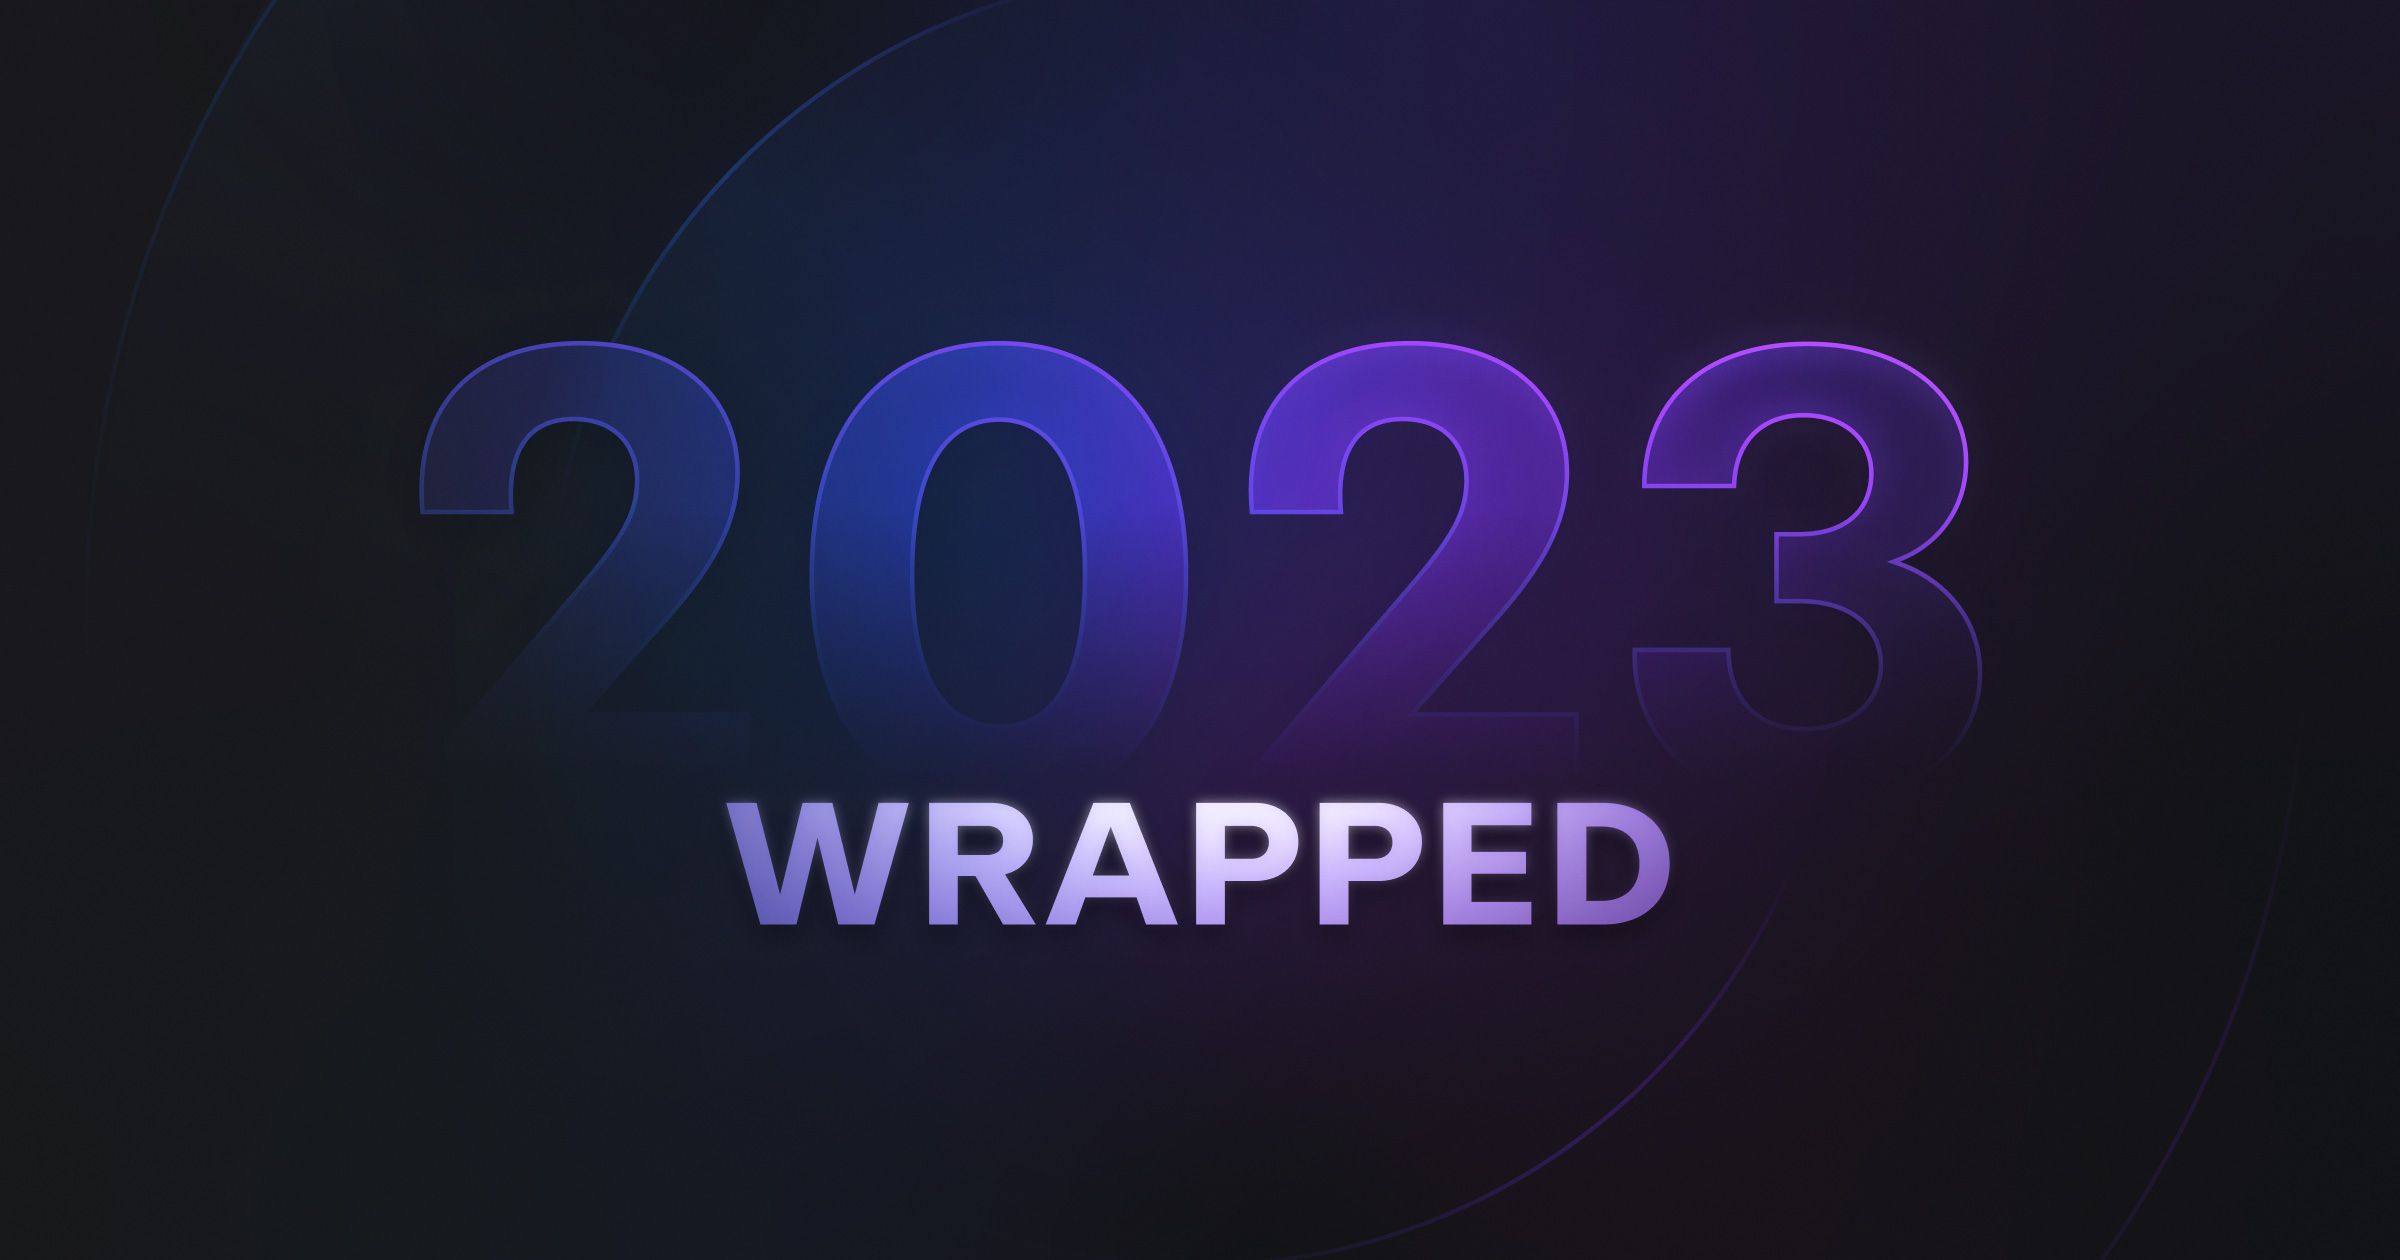 Doppler 2023 Wrapped